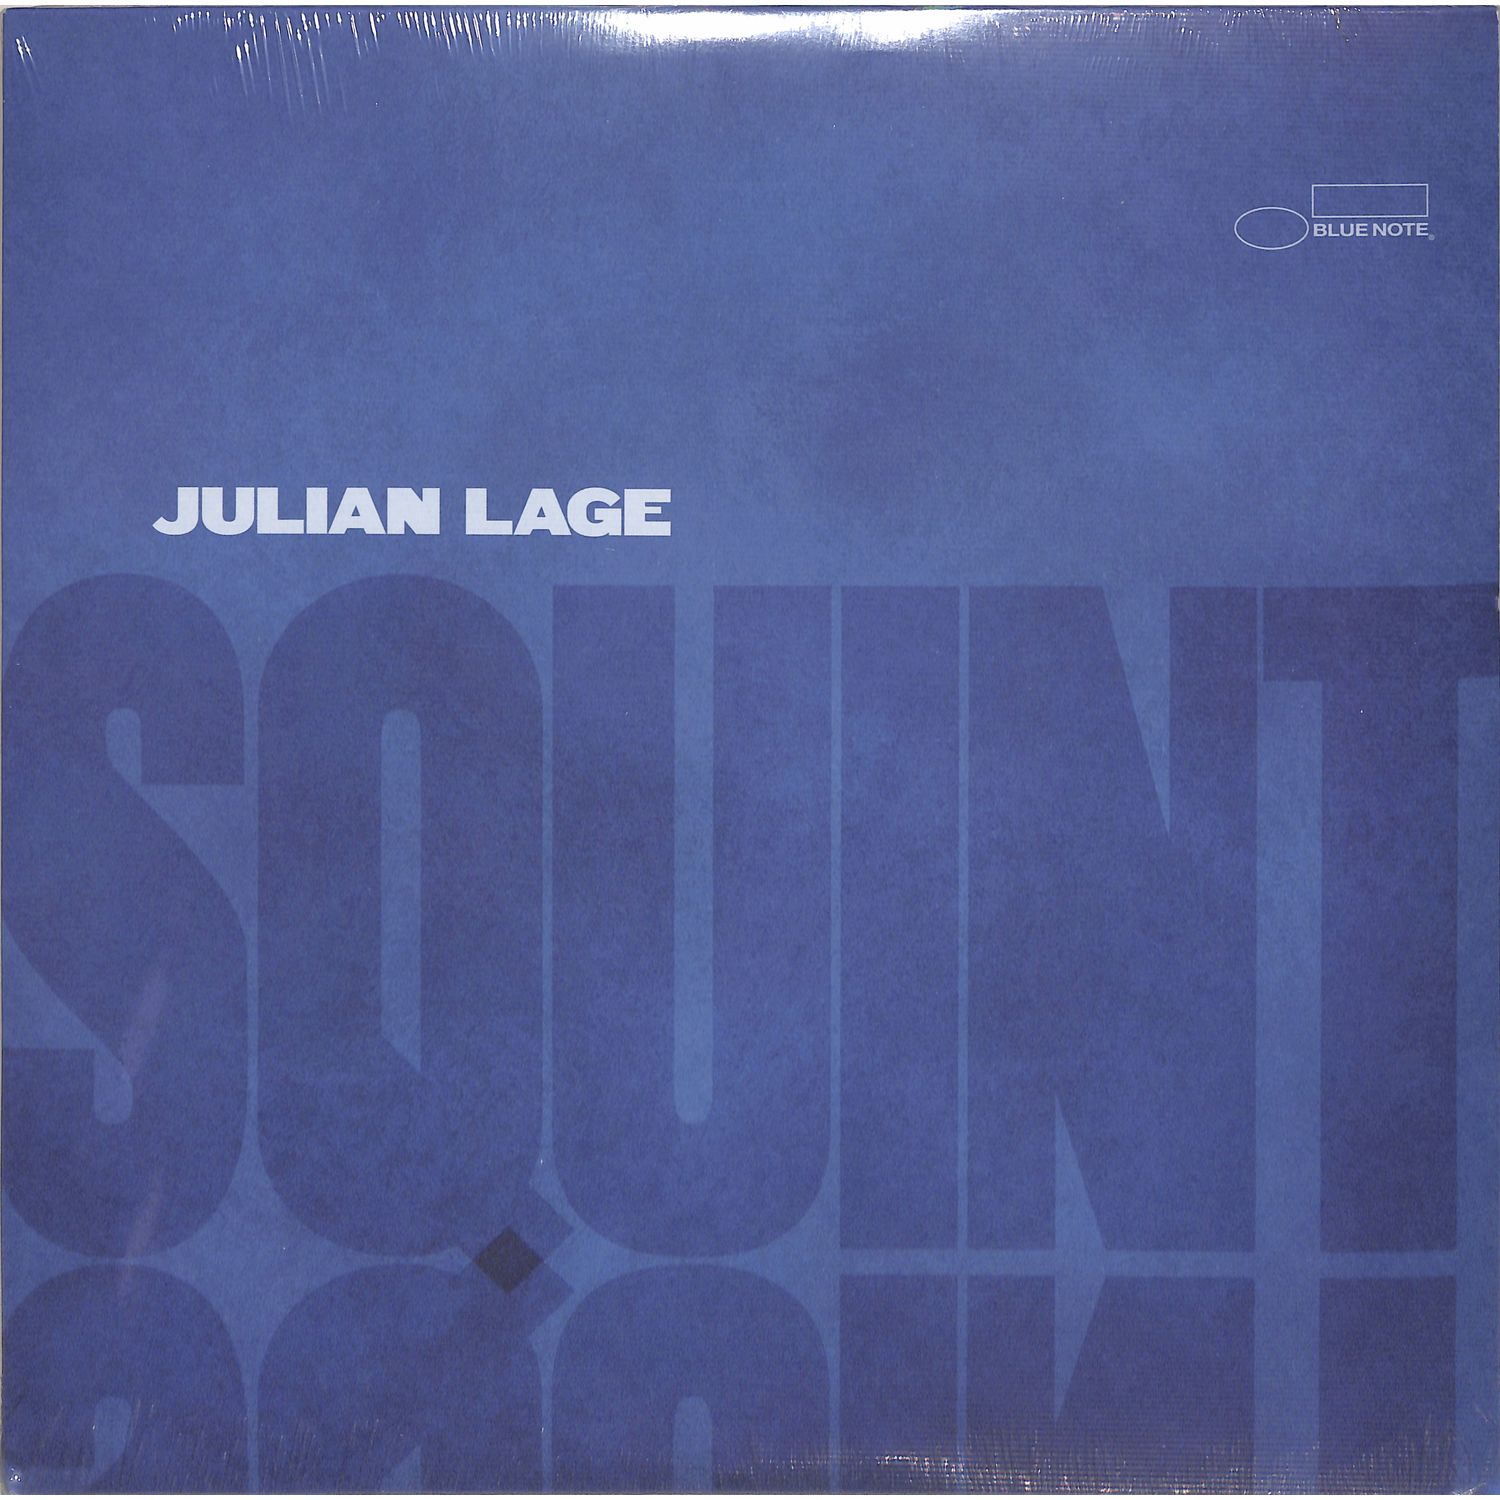 Julian Lage - SQUINT 